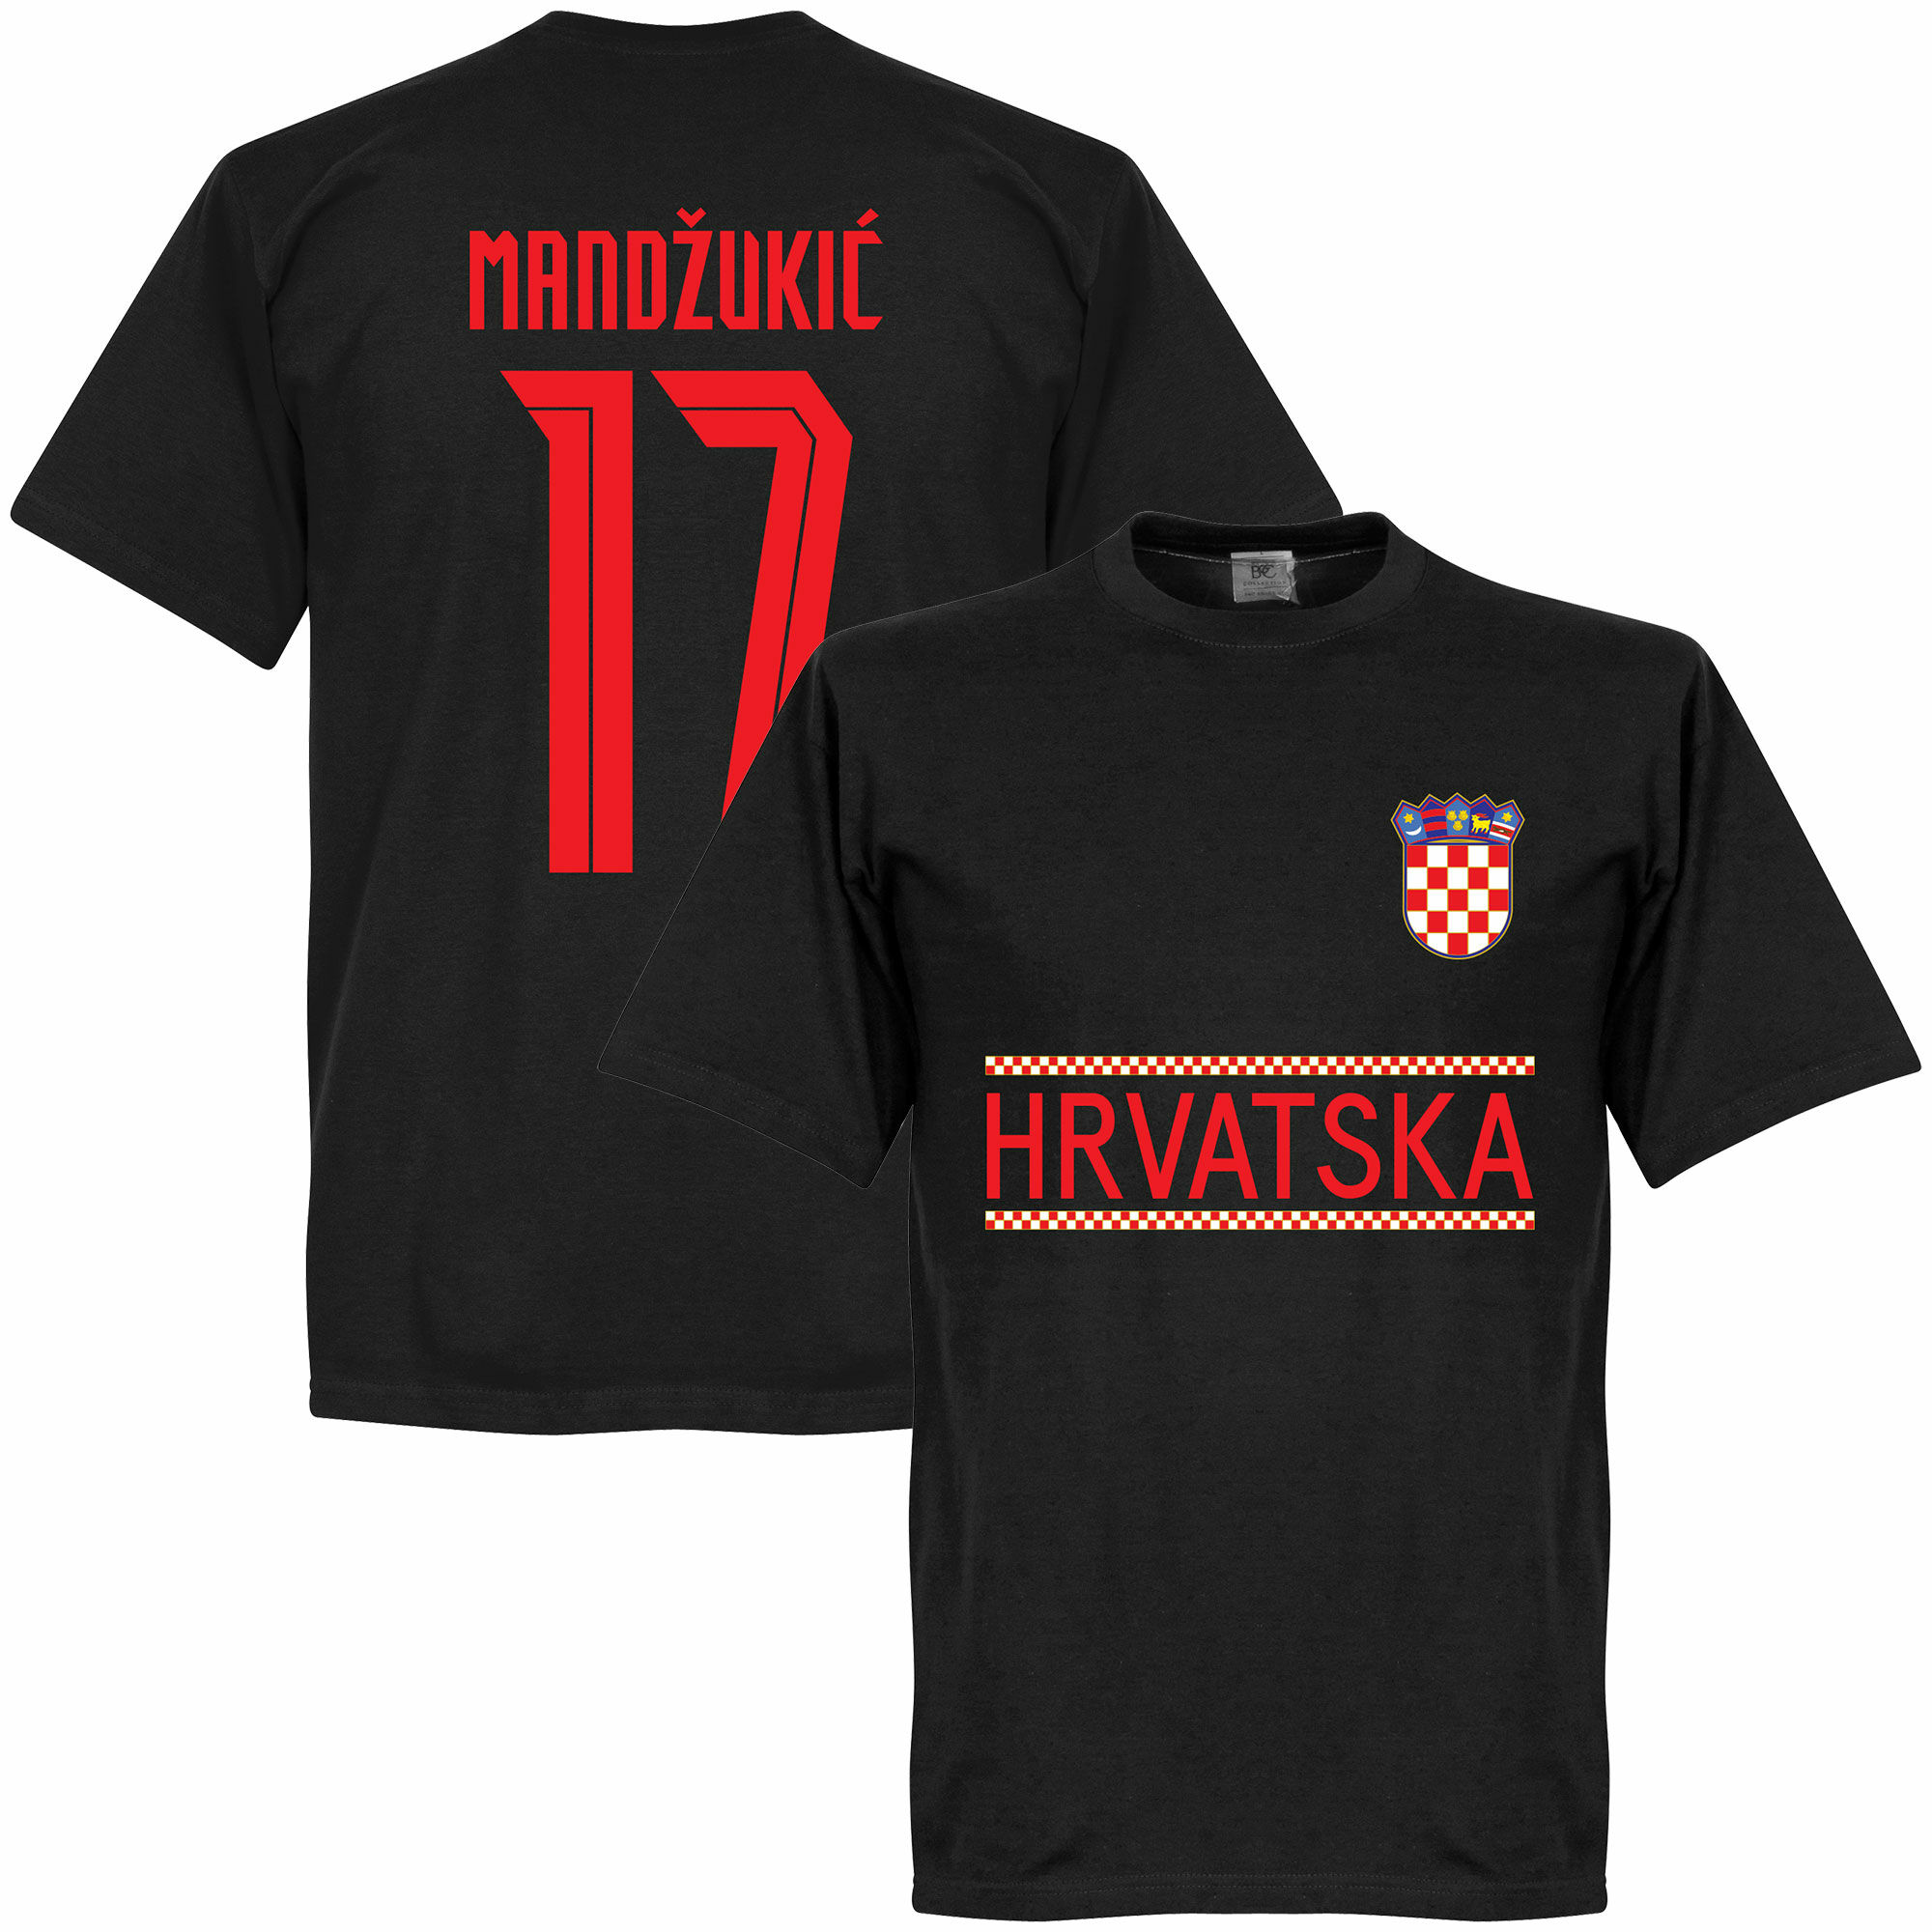 Chorvatsko - Tričko - číslo 17, Mario Mandžukić, černé